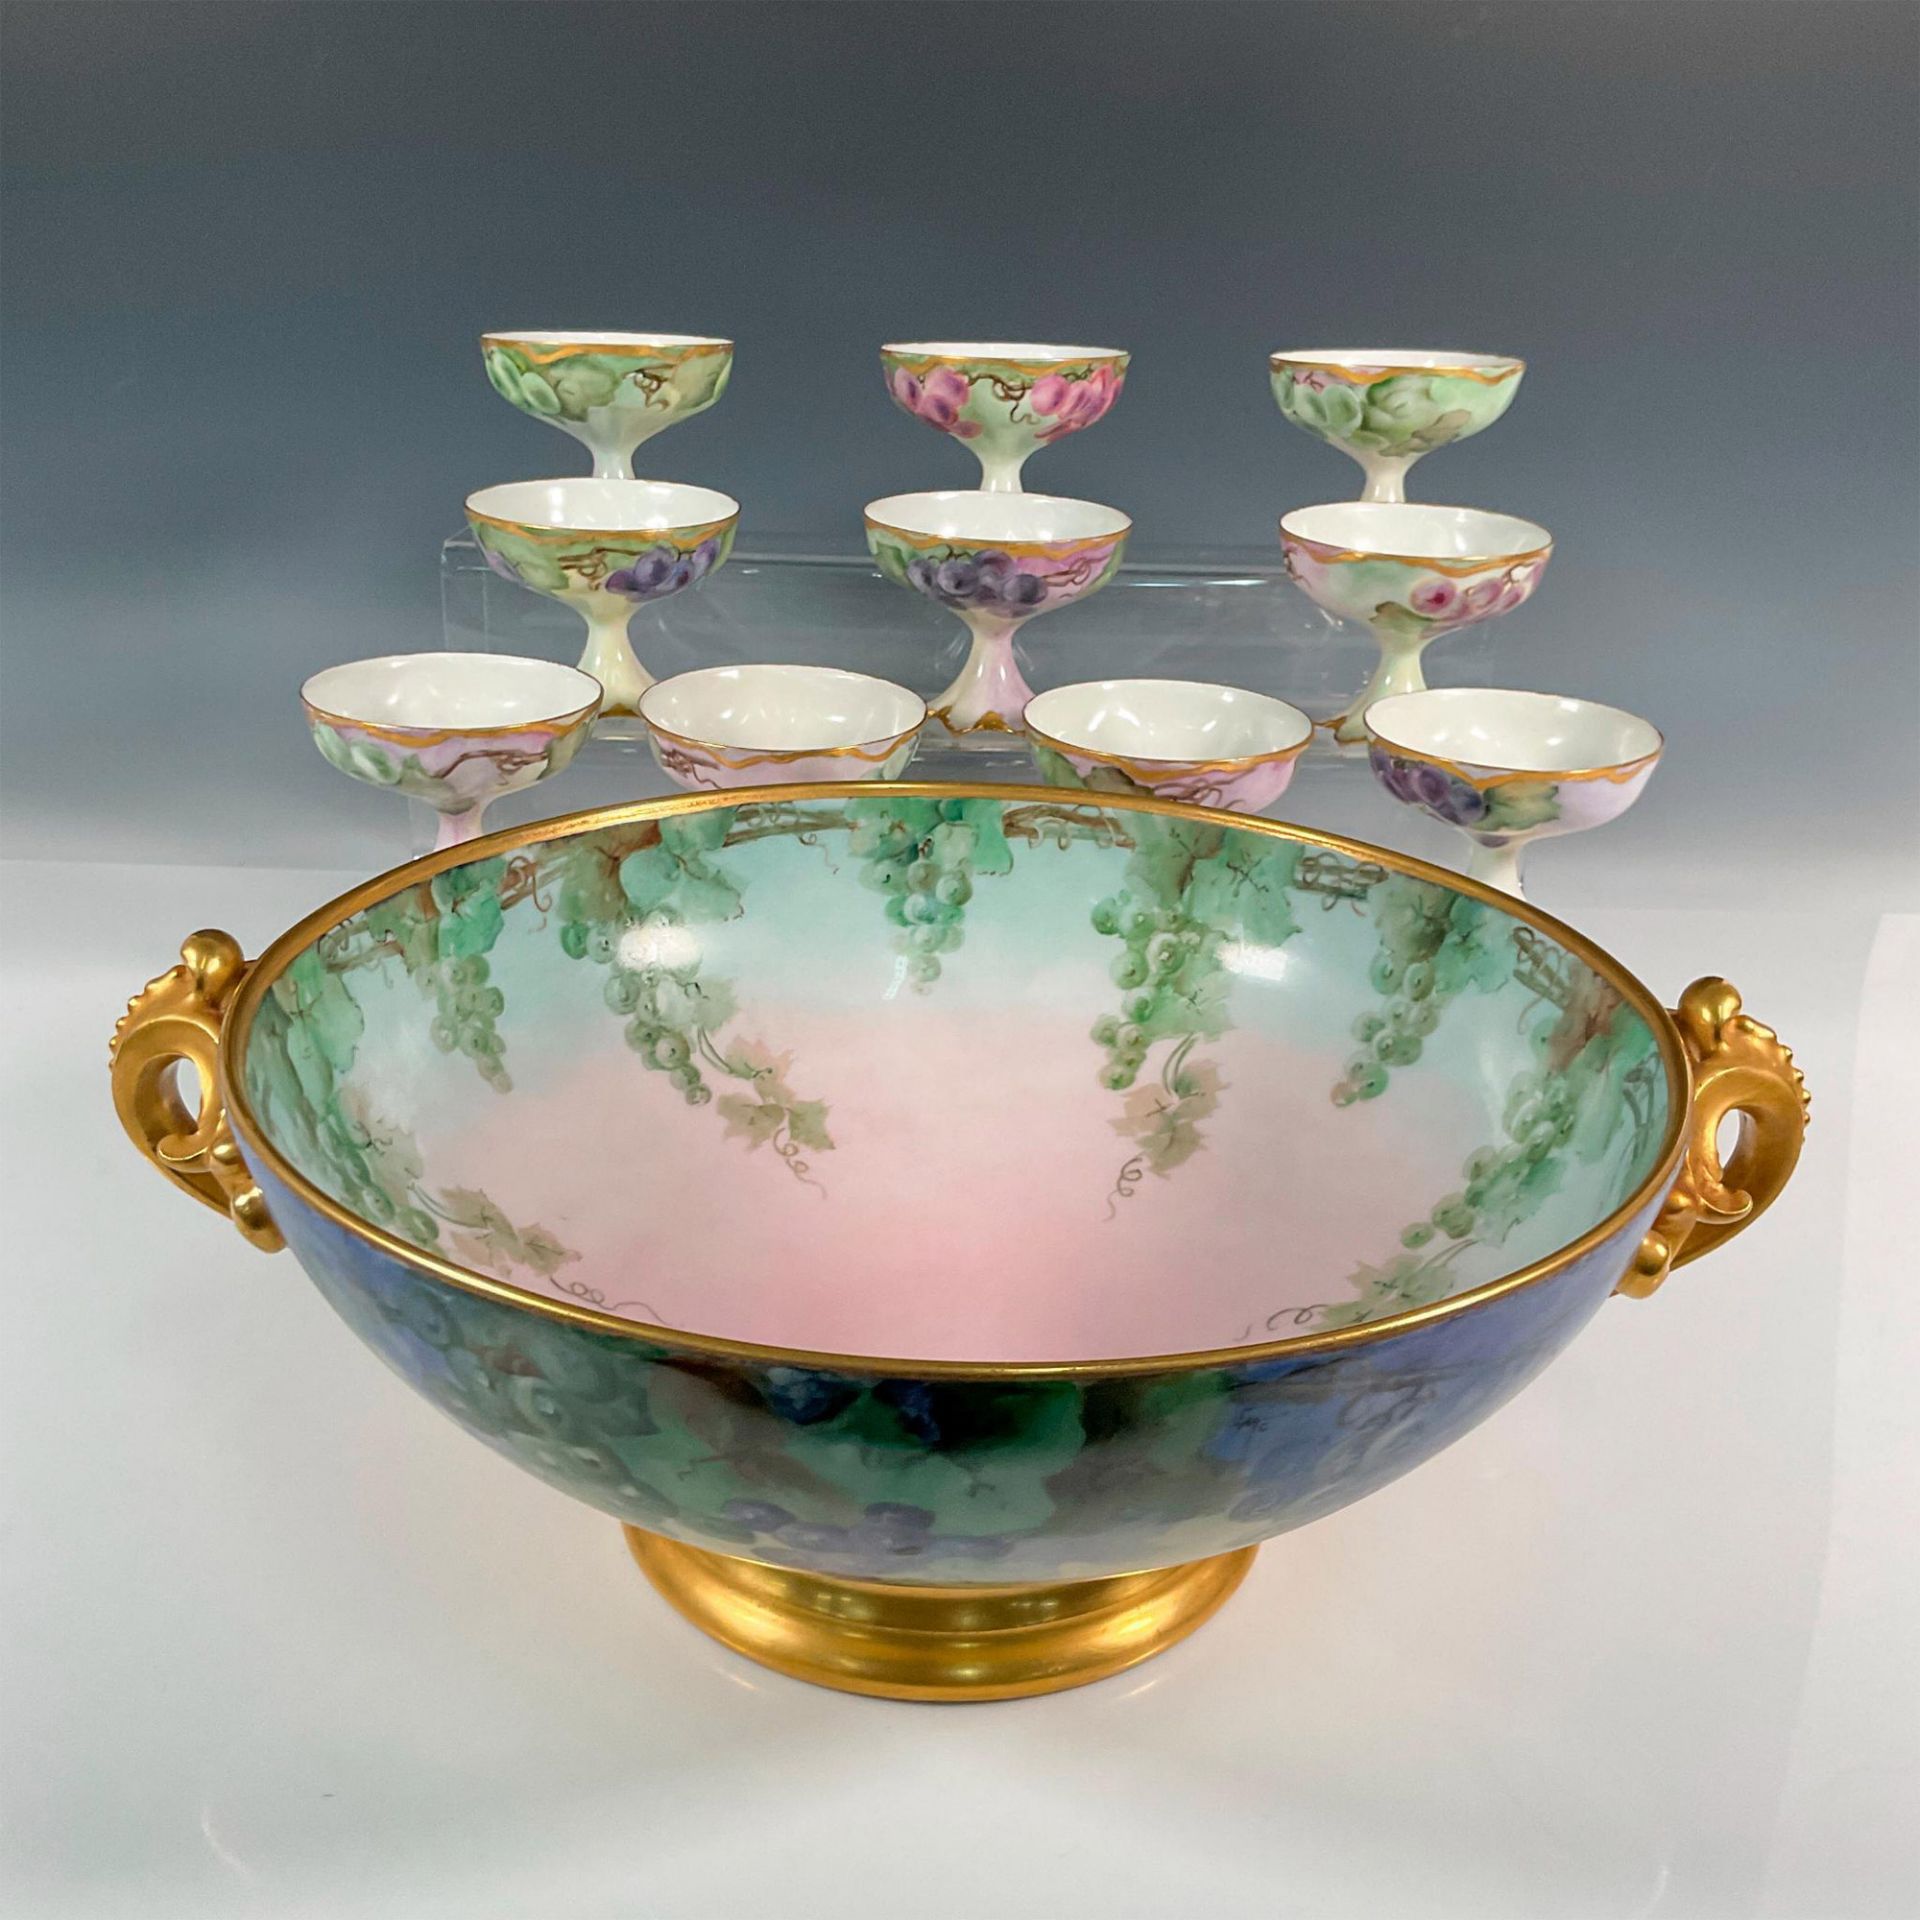 11pc Tressemanes Vogt Limoges Porcelain Bowl and Cups, Grape - Image 4 of 15